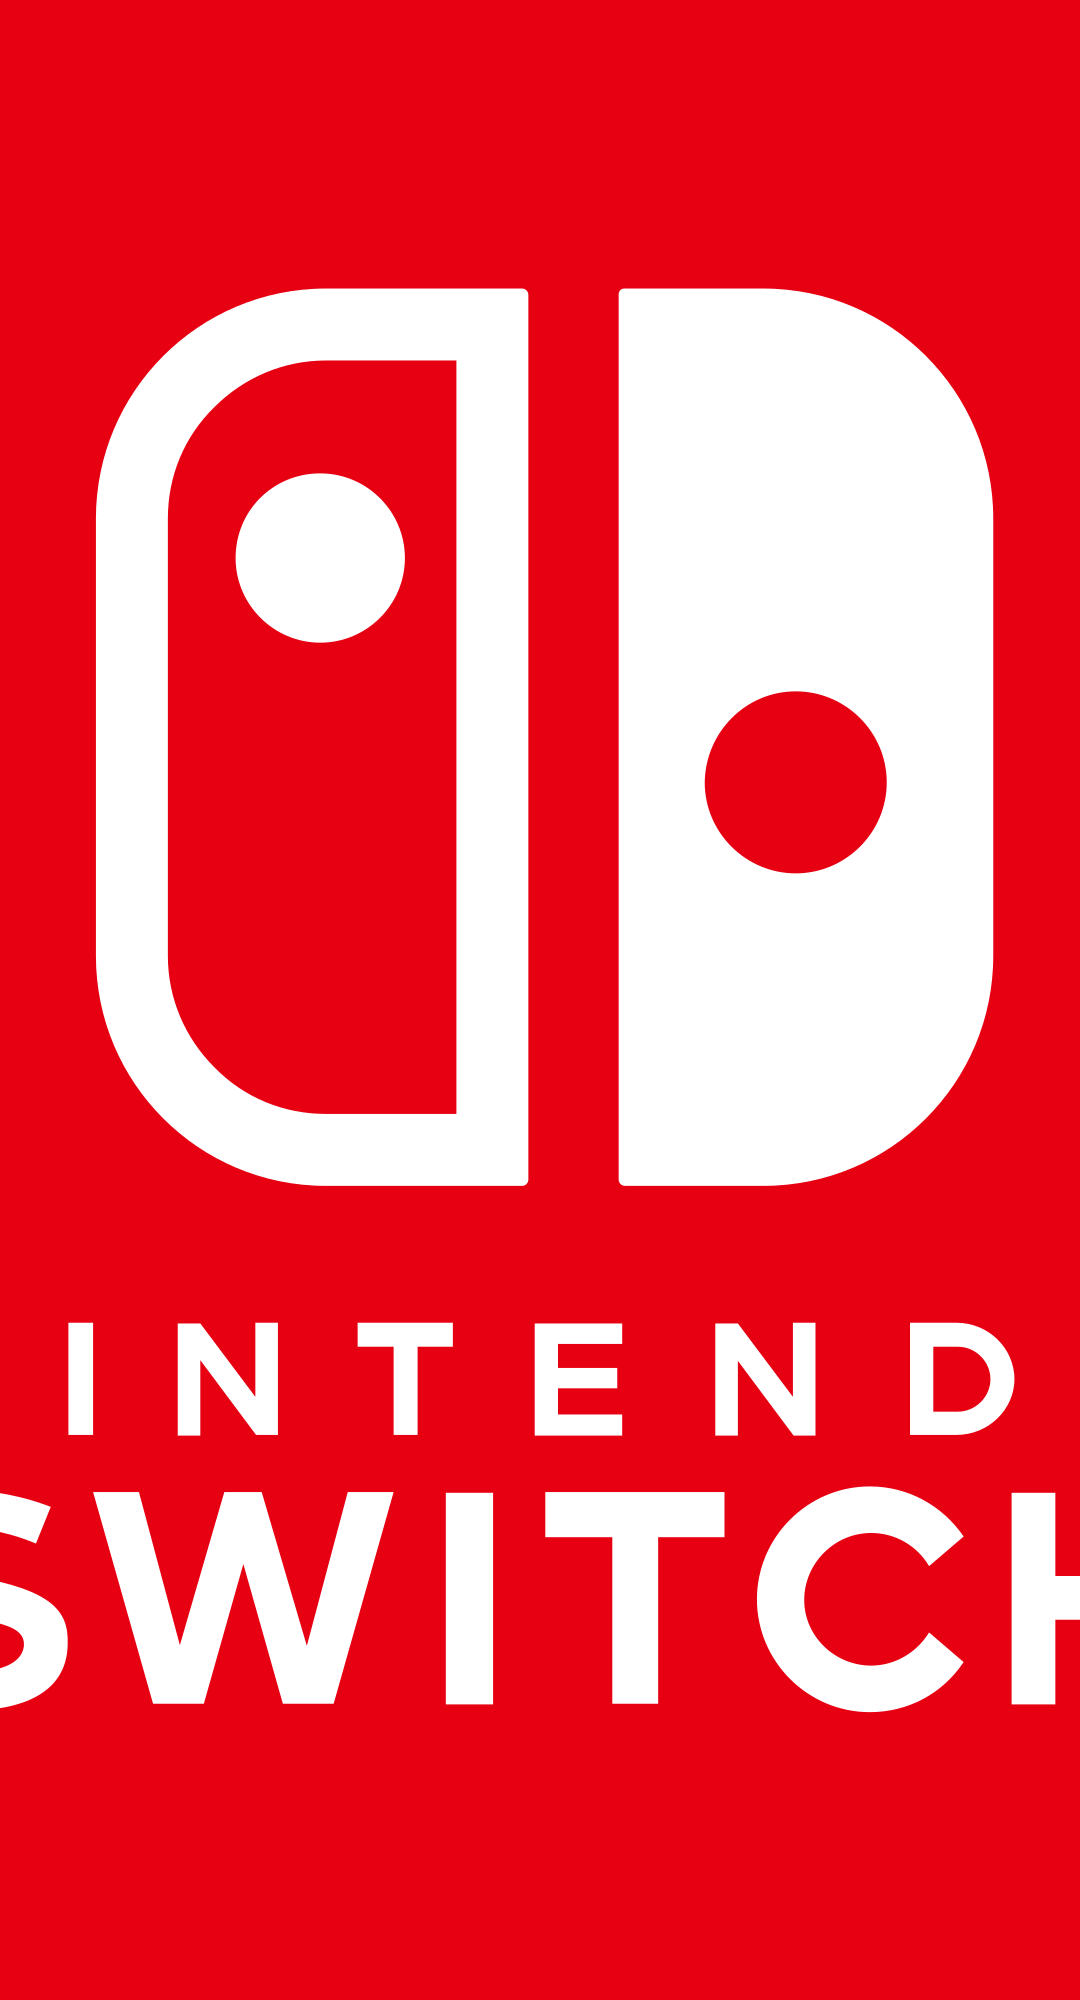 Il Nintendo Switch del primo unboxing è in realtà stato rubato